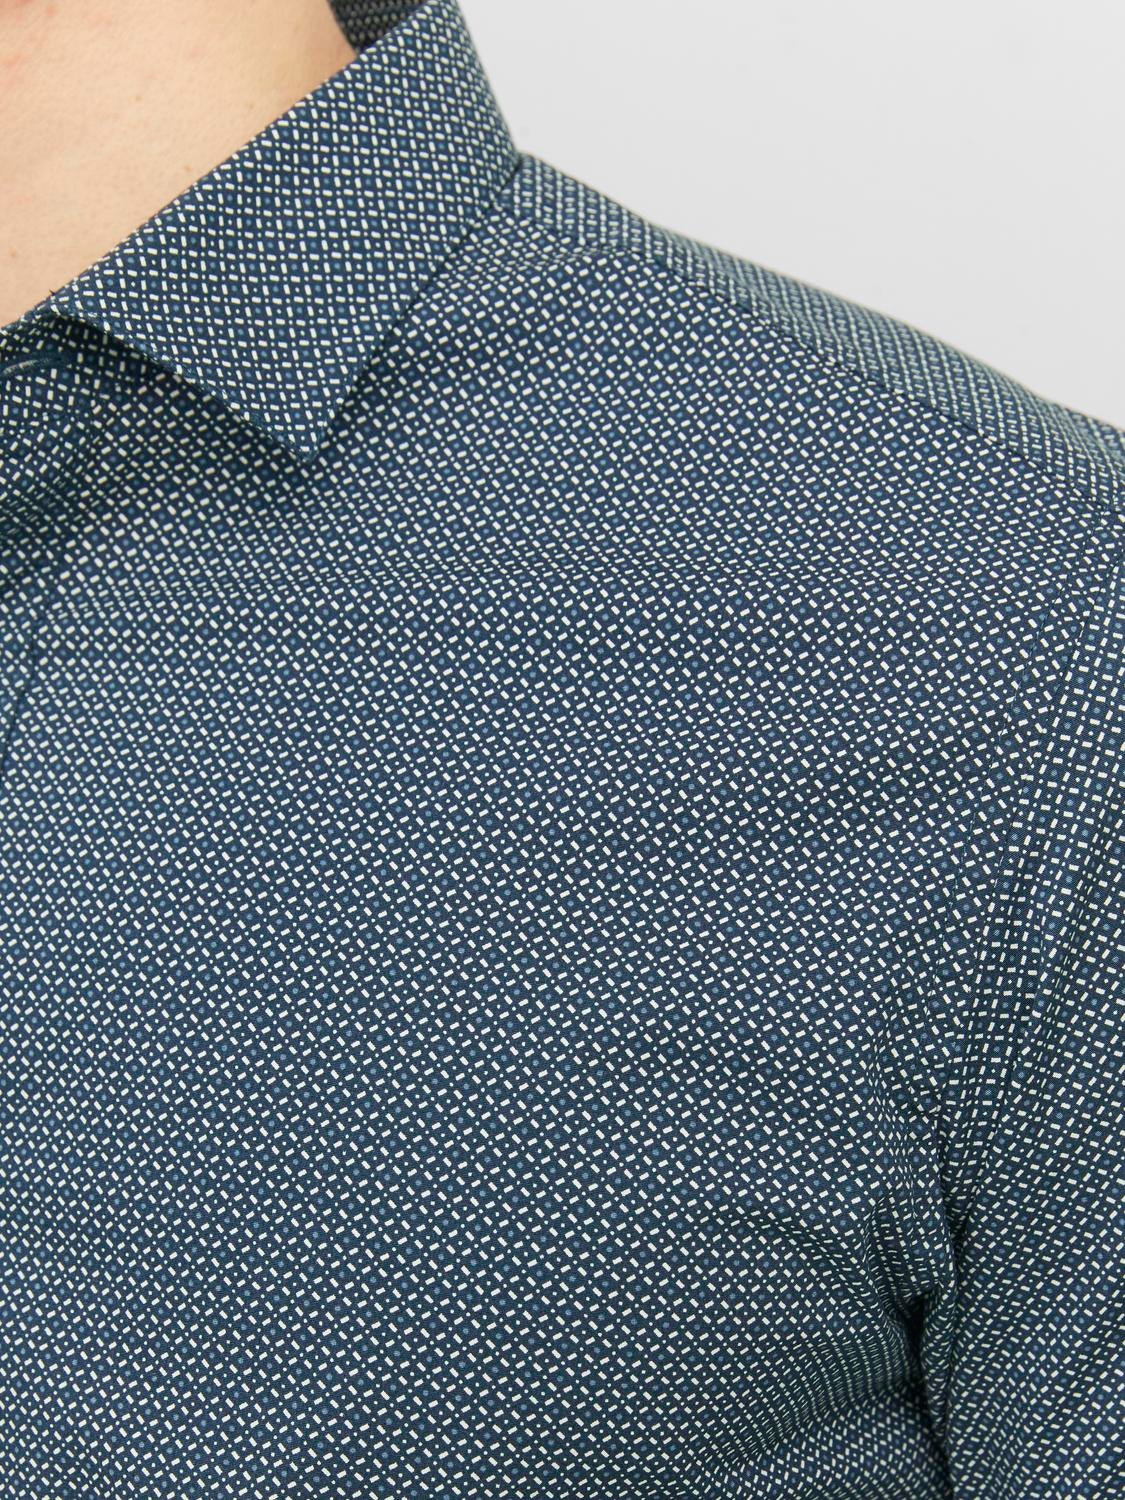 Jack & Jones Slim Fit Formell skjorte -Navy Blazer - 12237914